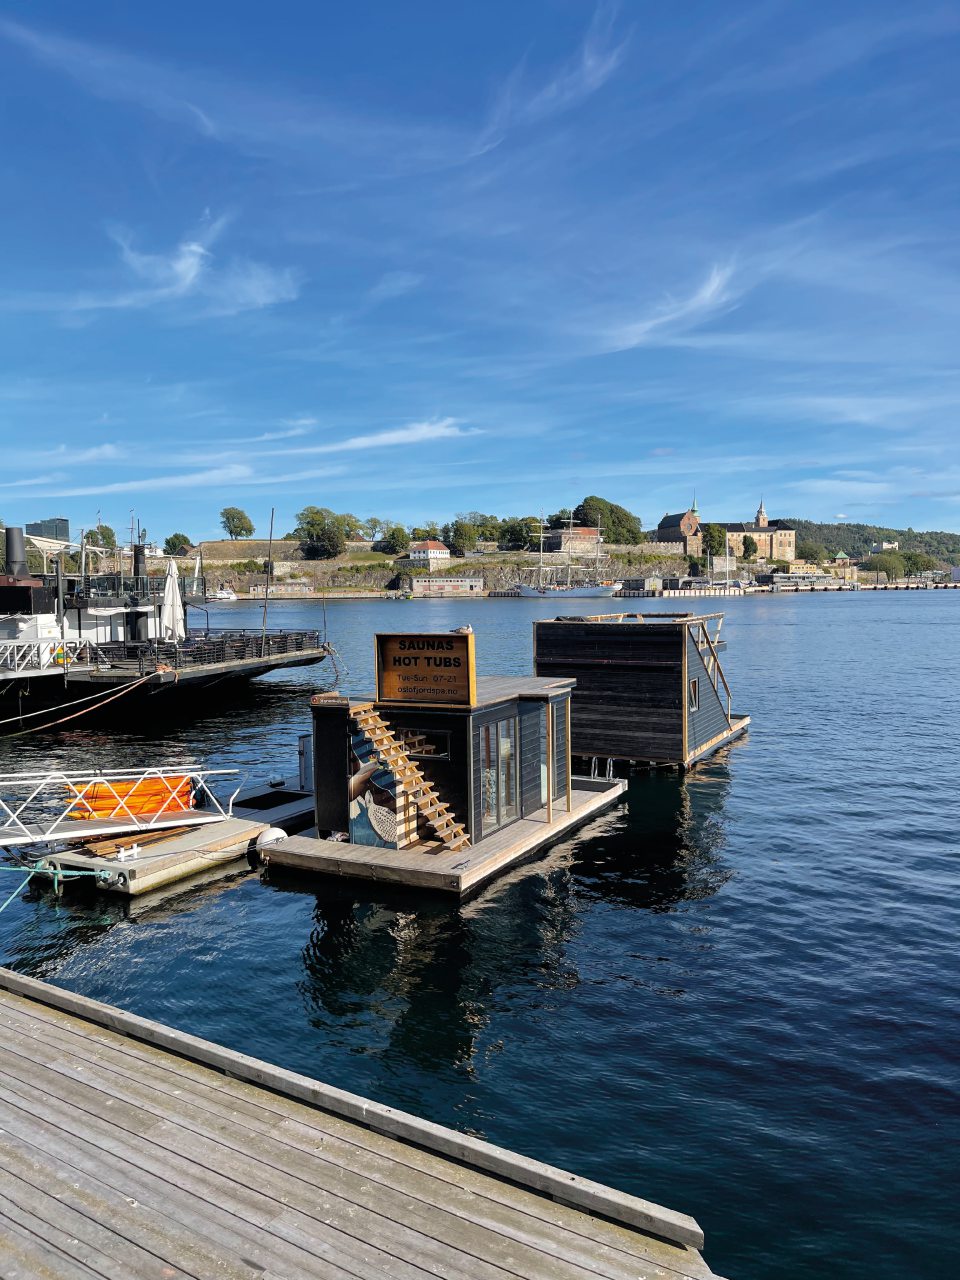 Oslo: in viaggio sulle tracce di Munch nella capitale norvegese